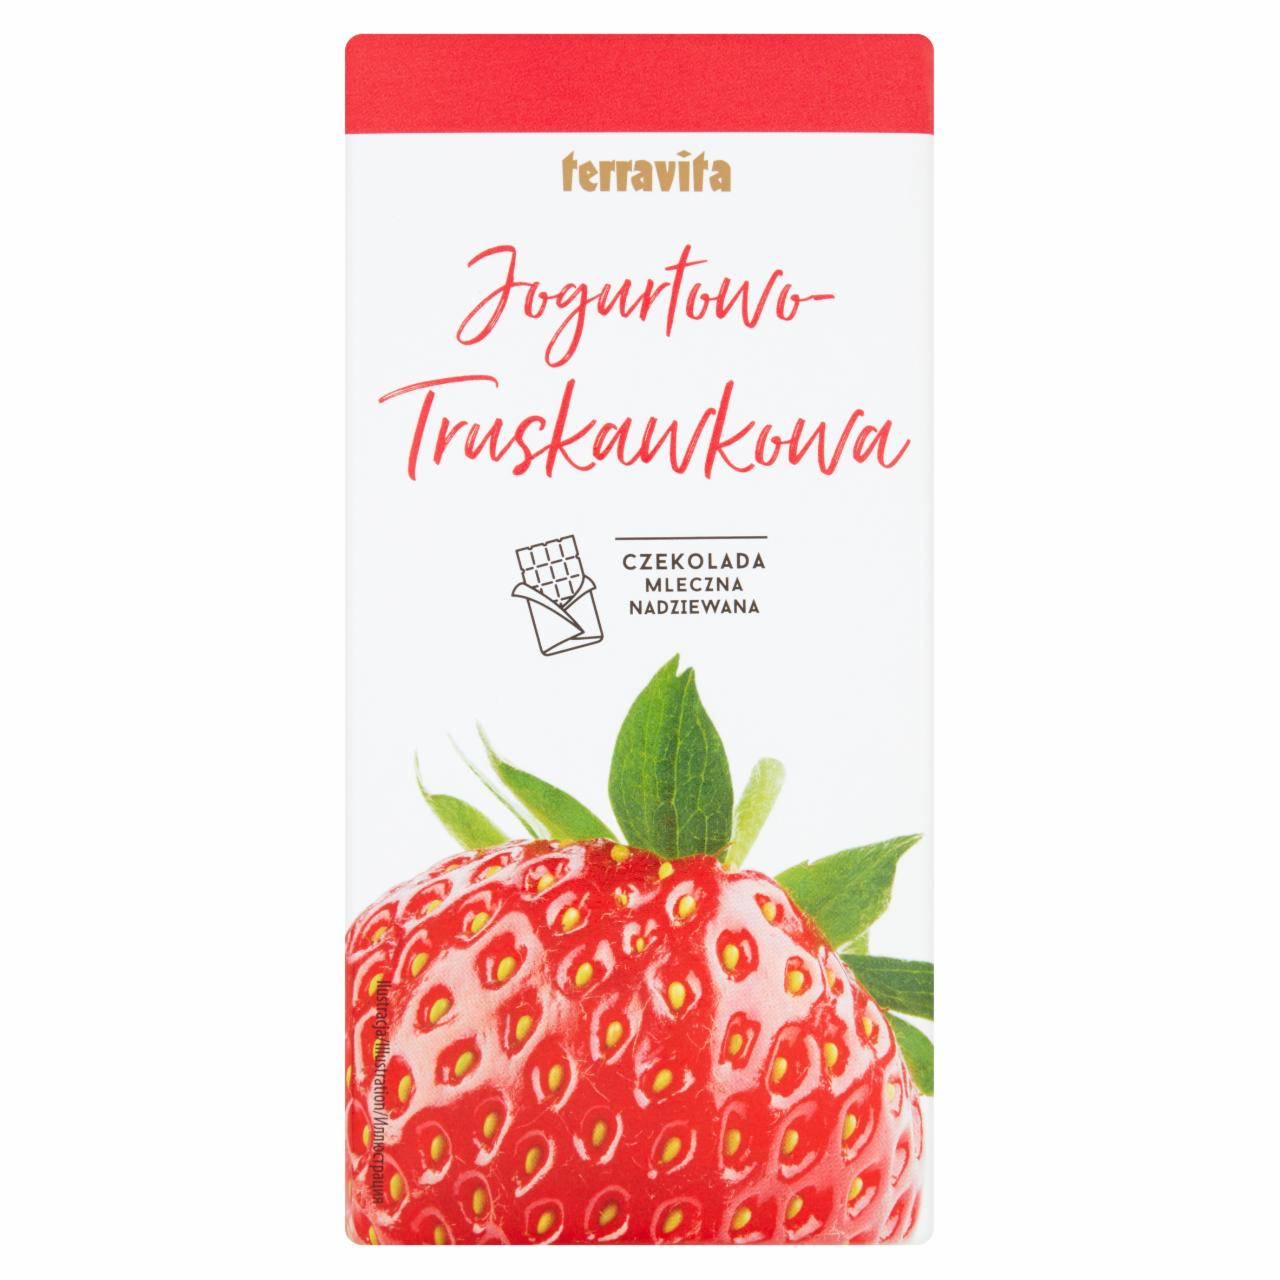 Zdjęcia - Terravita Czekolada mleczna nadziewana jogurtowo-truskawkowa 100 g